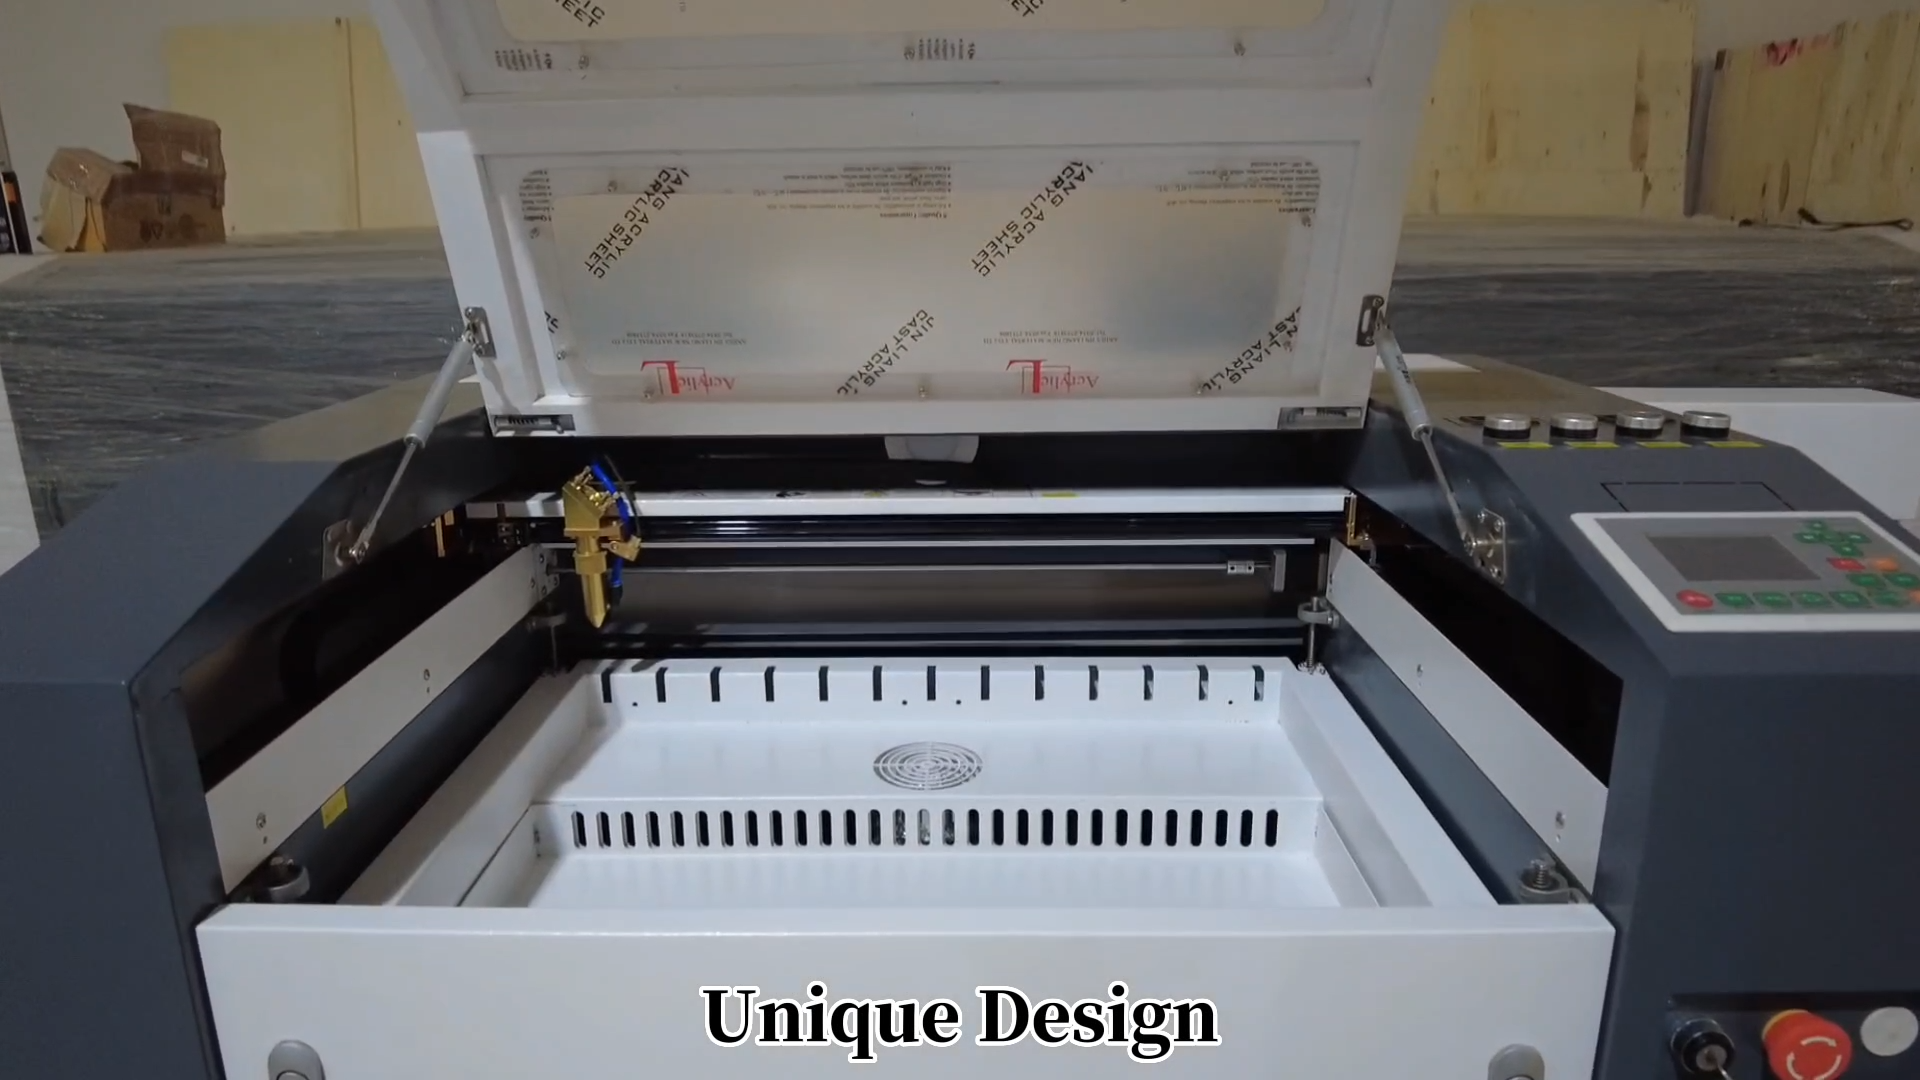 4060 6090 1060 1390 1610 60W 80W 100W 130W 150W 180W CO2 Laser Cutting Machines Customized Wood Cutter Machine Wood Printer